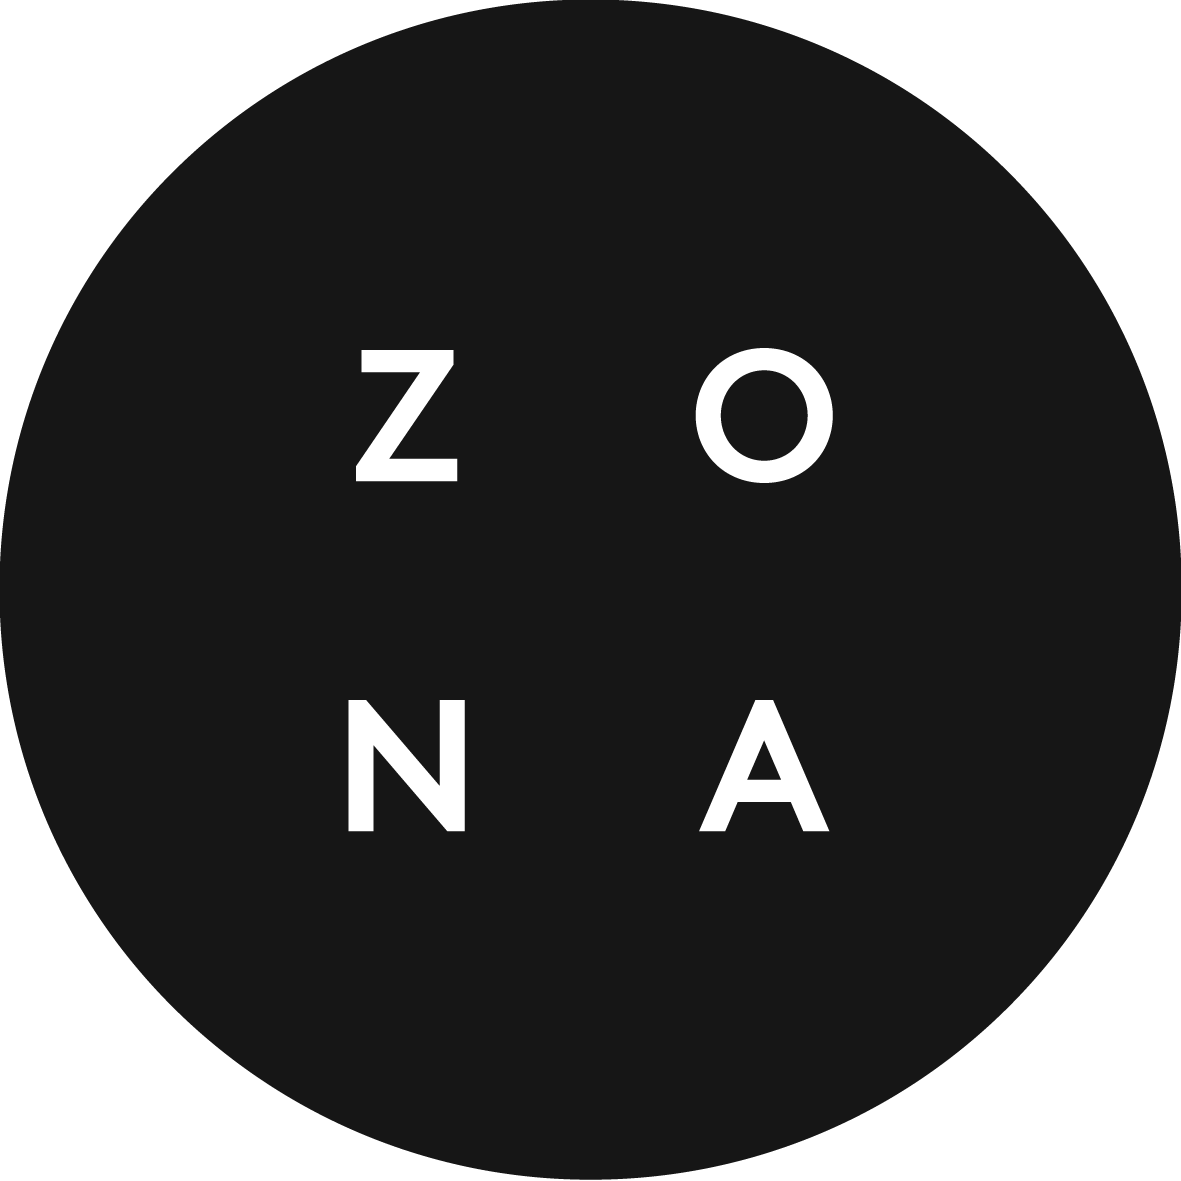 (c) Zona.org